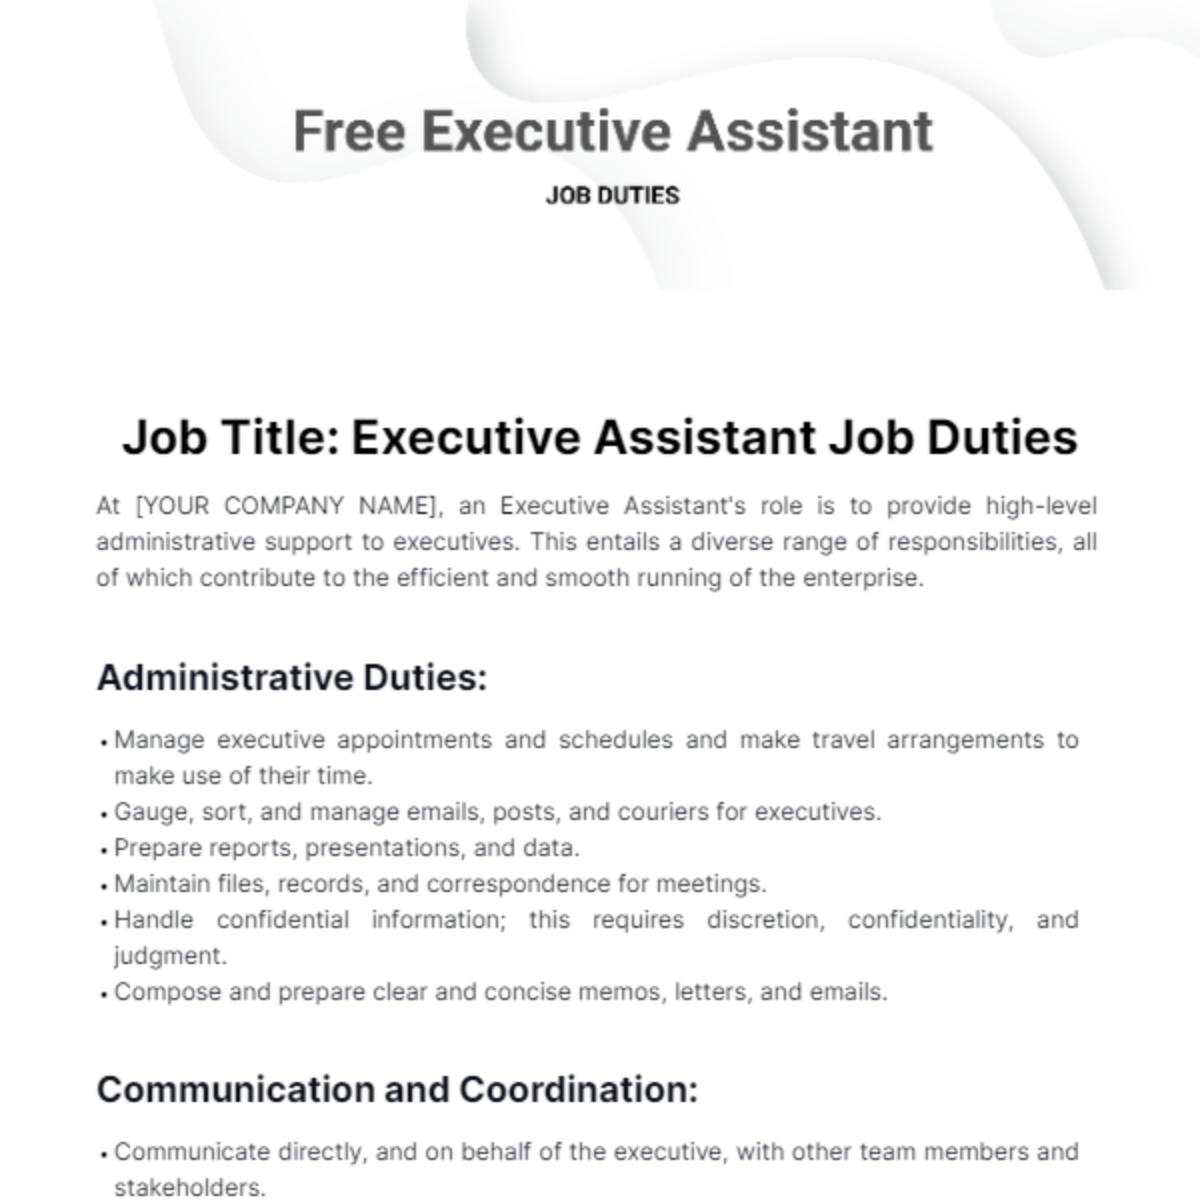 Free Executive Assistant Job Duties Template